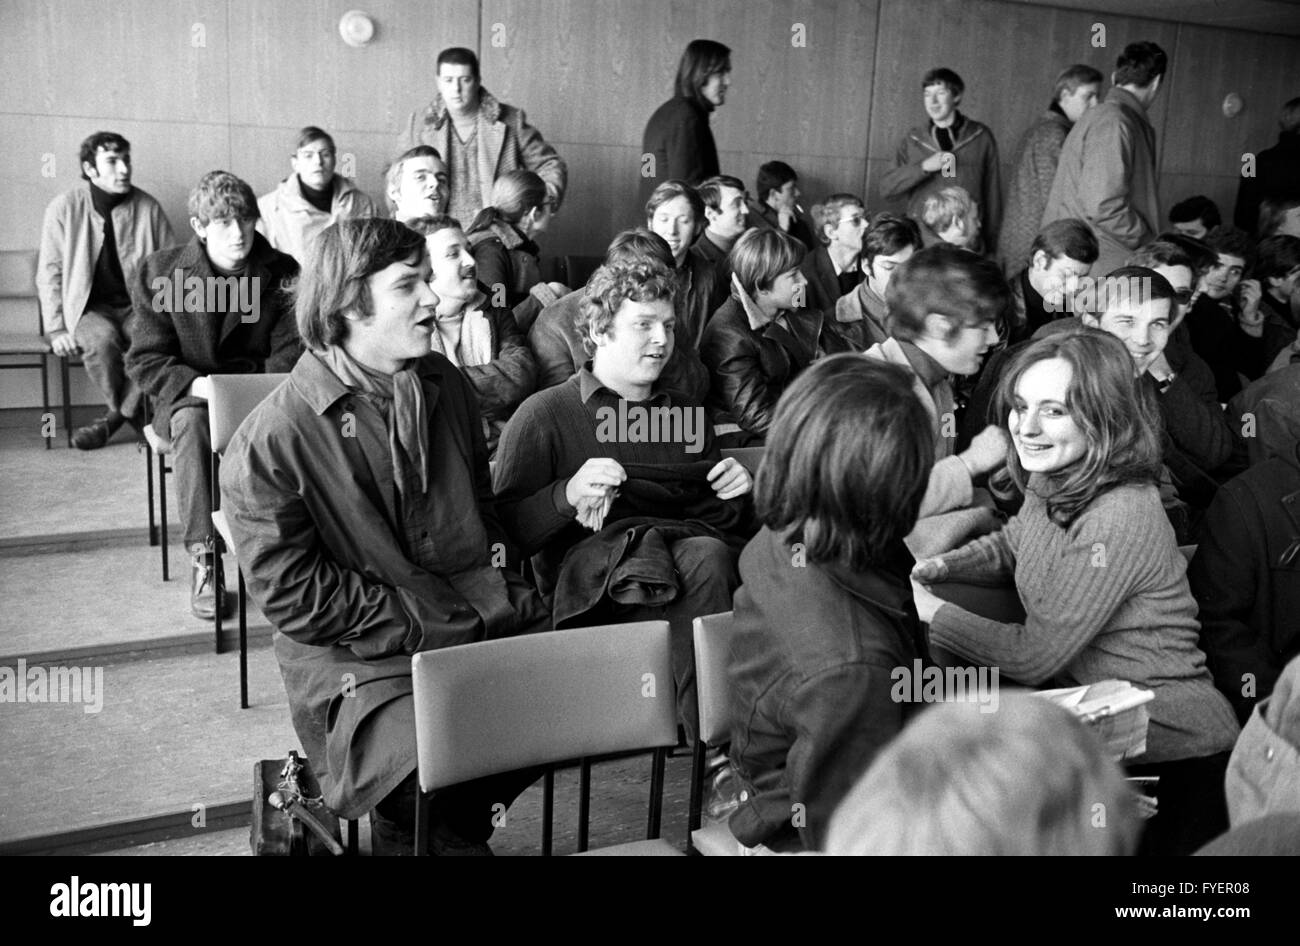 Daniel Cohn-Bendit (centro) tra gli spettatori. Accusato leader degli studenti Hans-Jürgen Krahl (non in foto) ha di stare davanti a una corte di assessori laici a Frankfurt am Main il 05 febbraio 1969. Egli è accusato di pesanti sconfinamenti in coincidenza con la coercizione. Egli era stato arrestato il 31 gennaio 1969. Foto Stock